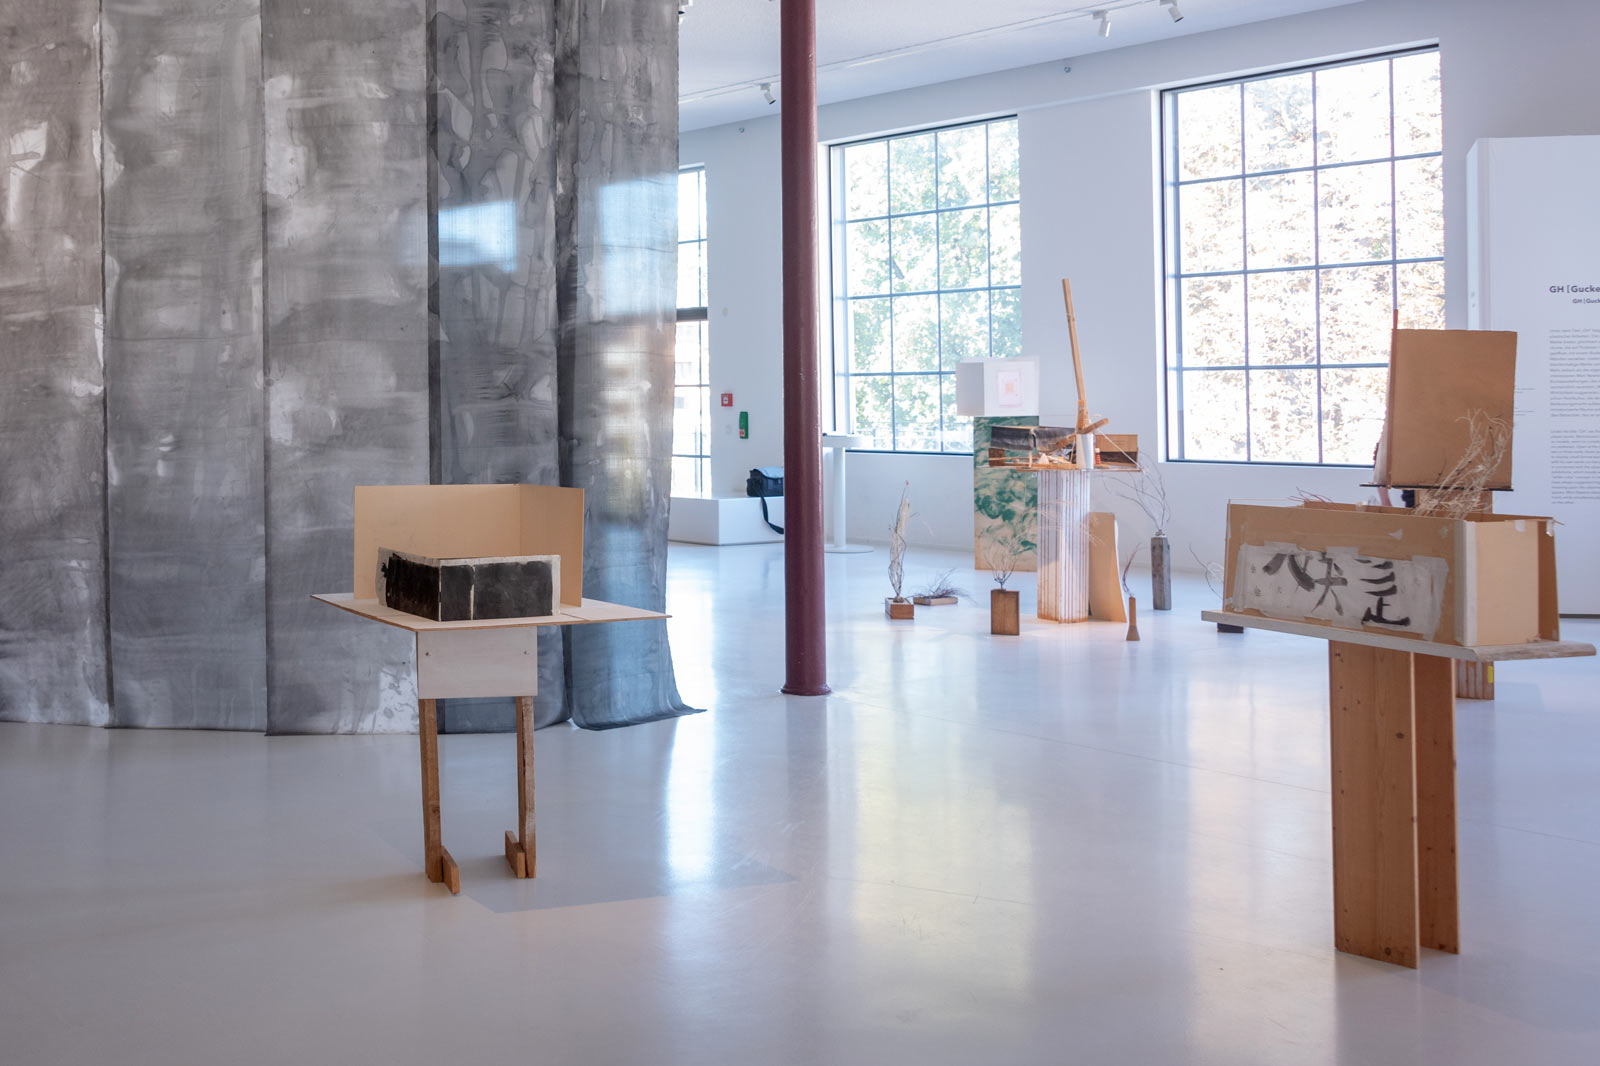 Das Referenzbild für Ausstellungsgestaltung aus der Sonderausstellung No intention: Koho Mori-Newton zeigt die Exponat-Präsentation einer Skulptur sowie Textildruck.